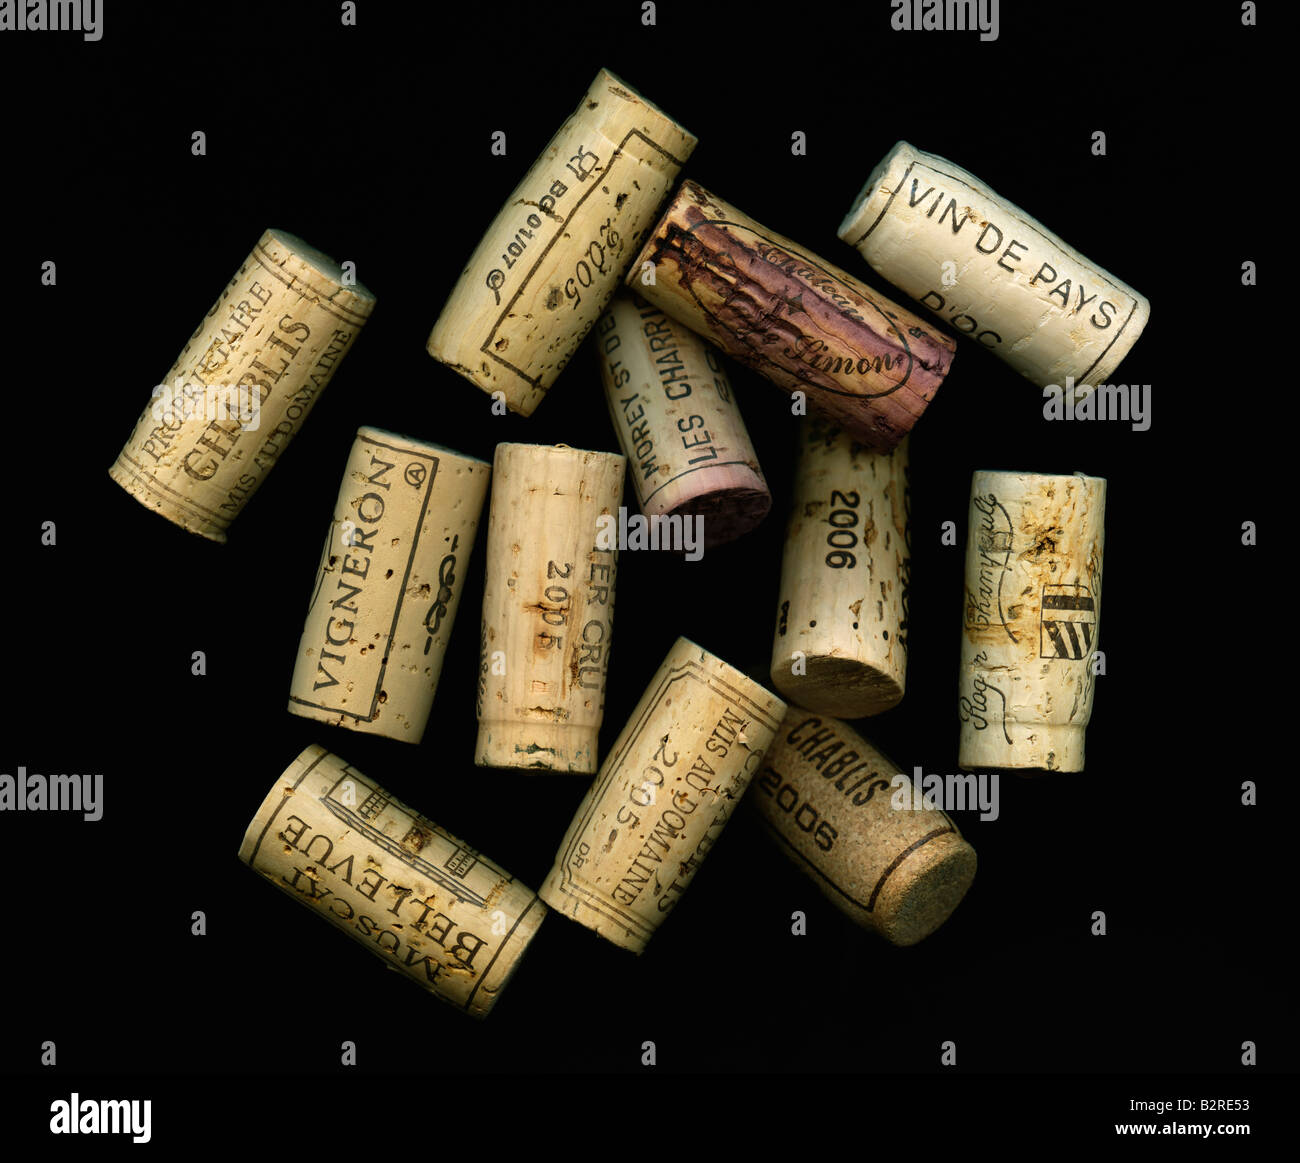 Selezione di raffinati vini tappi Foto Stock